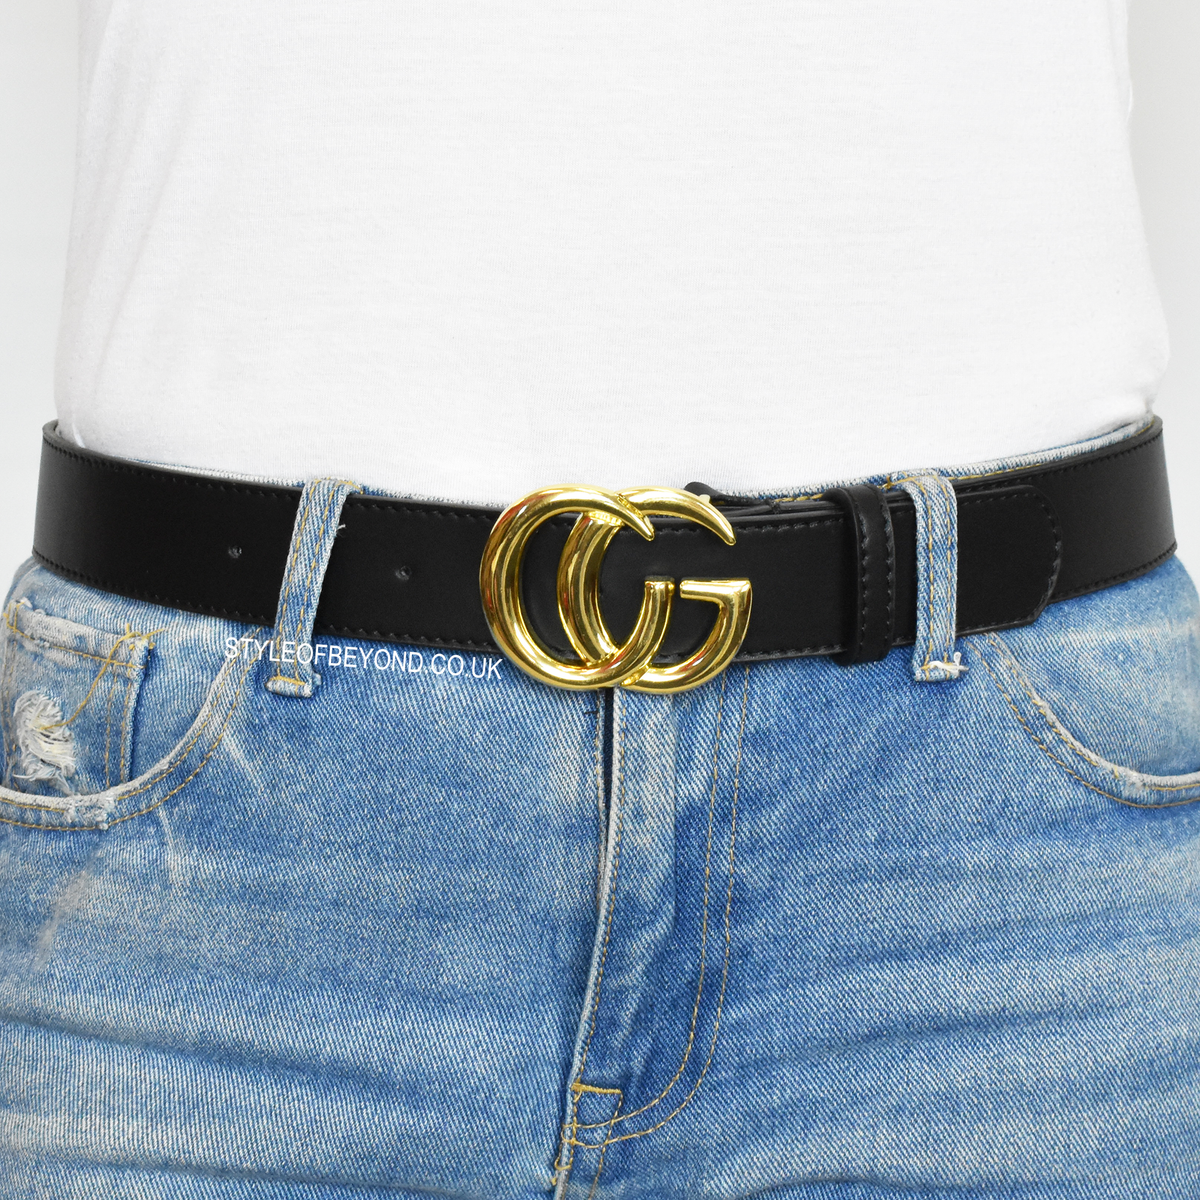 gucci womens belt uk